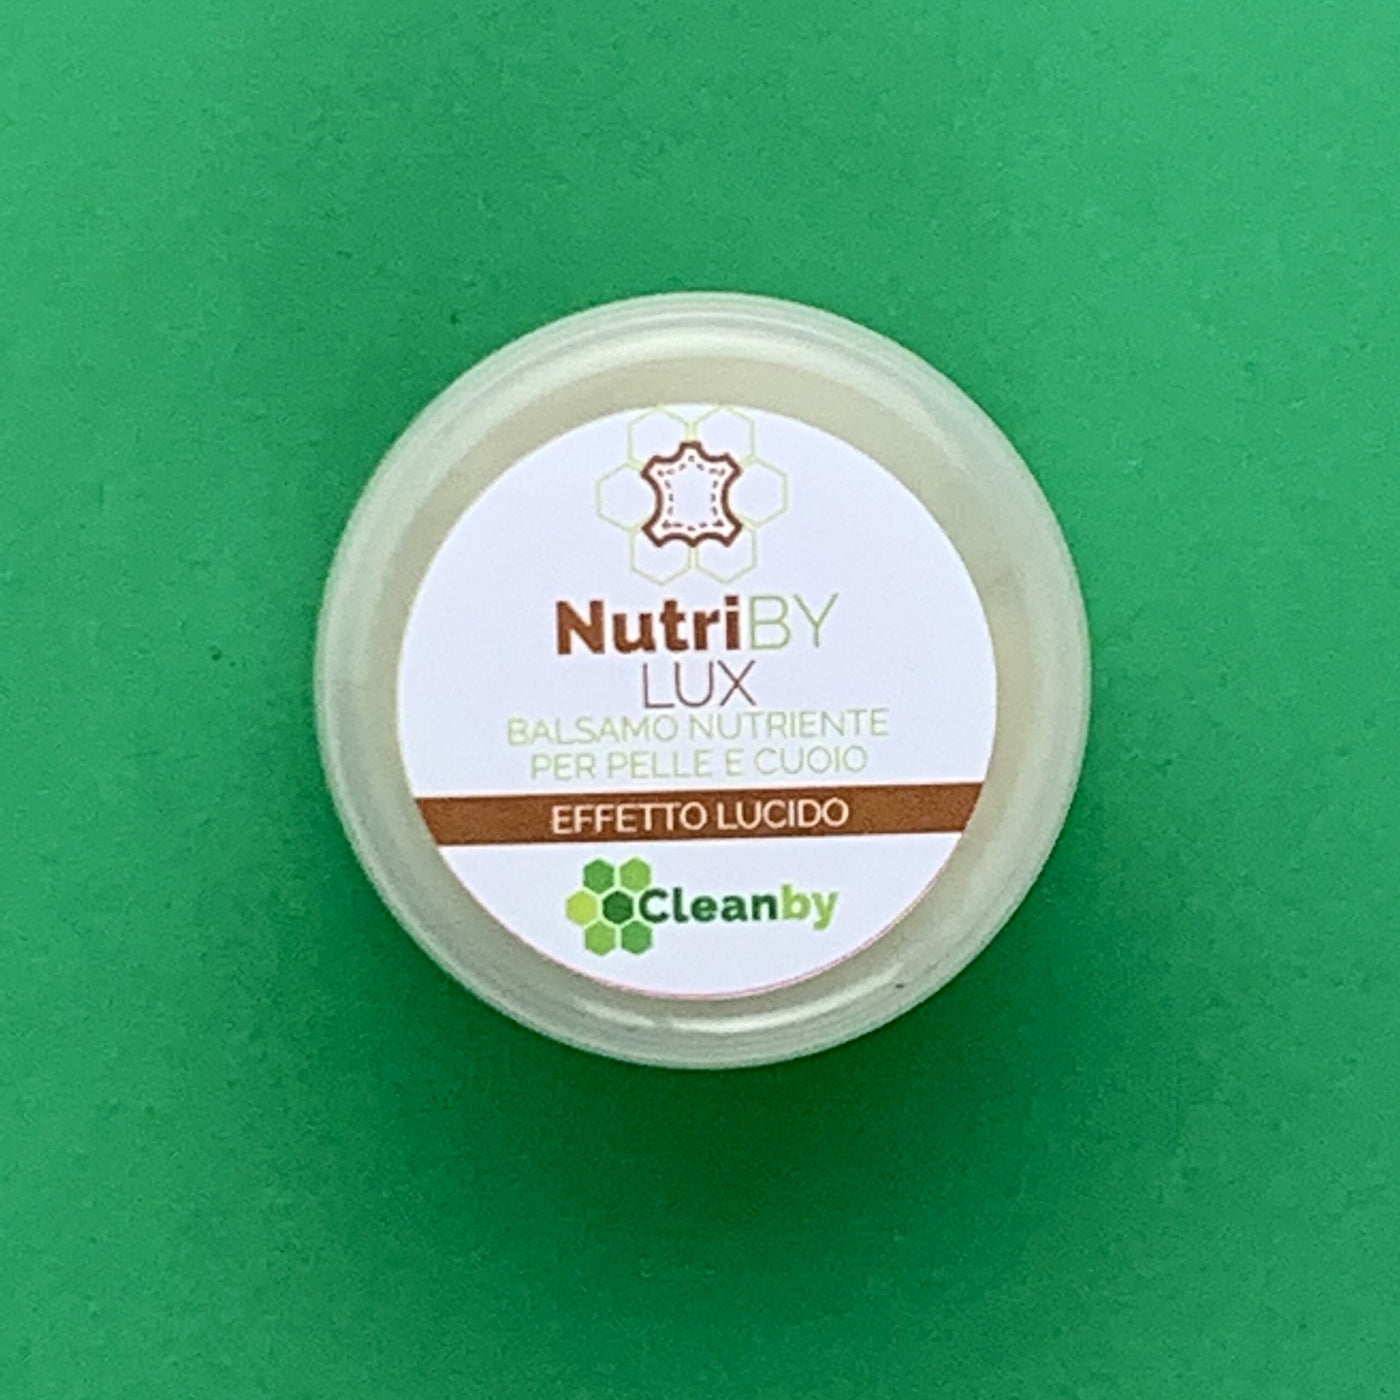 NutriBy Balsamo Nutriente Pelle e Cuoio Effetto LUX (Lucido) 50 ml